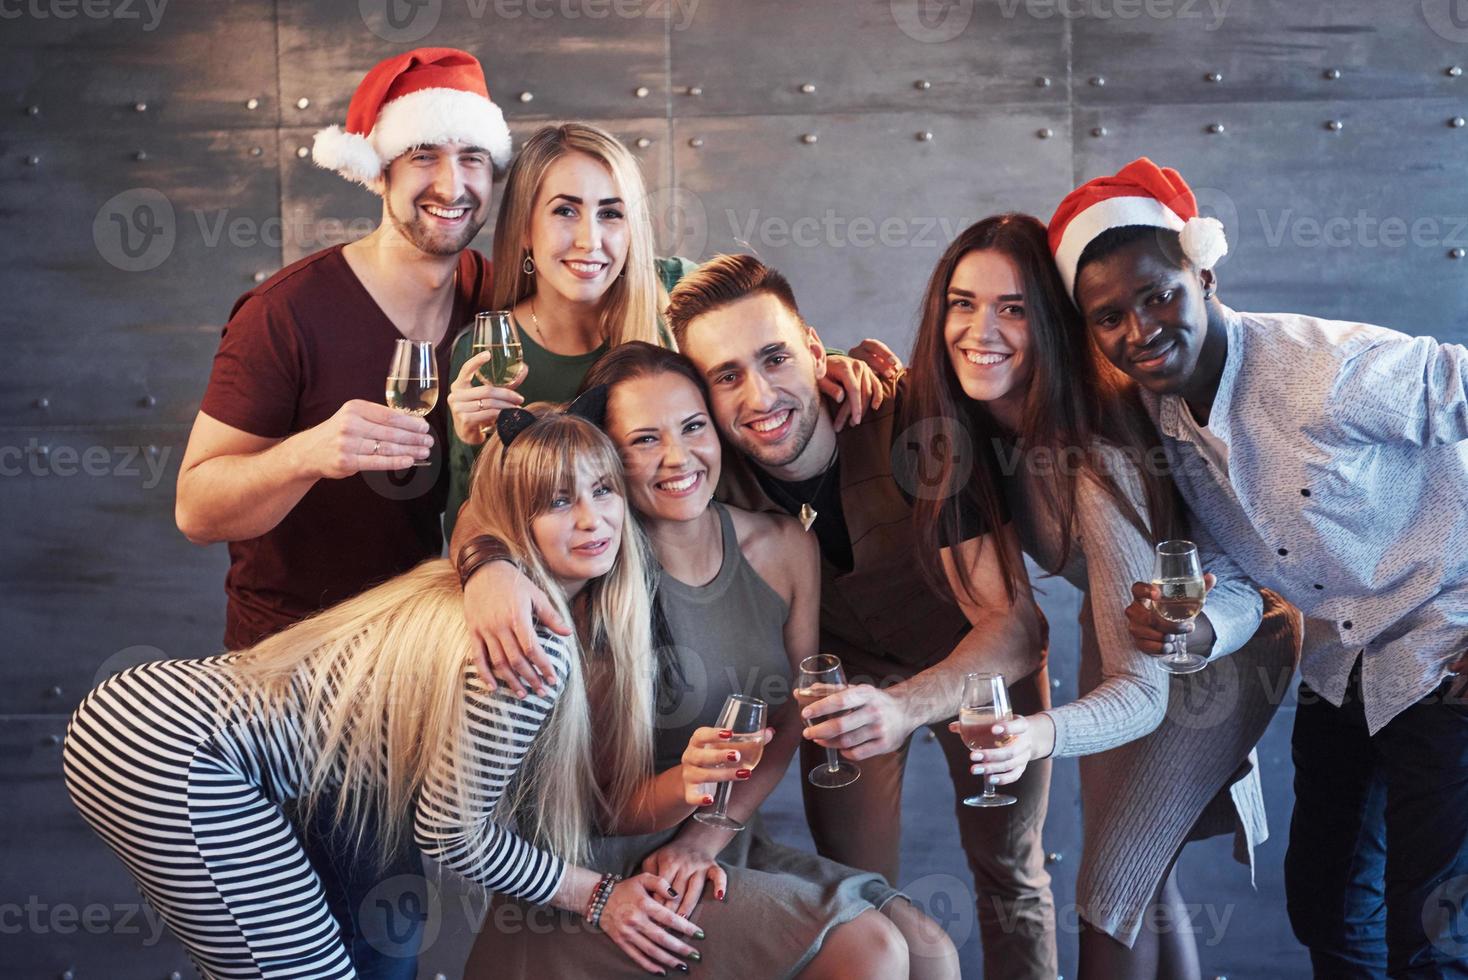 nieuwe jaar komt eraan. groep vrolijke jonge multi-etnische mensen in santa hoeden op het feest, poseren emotionele levensstijl mensen concept foto